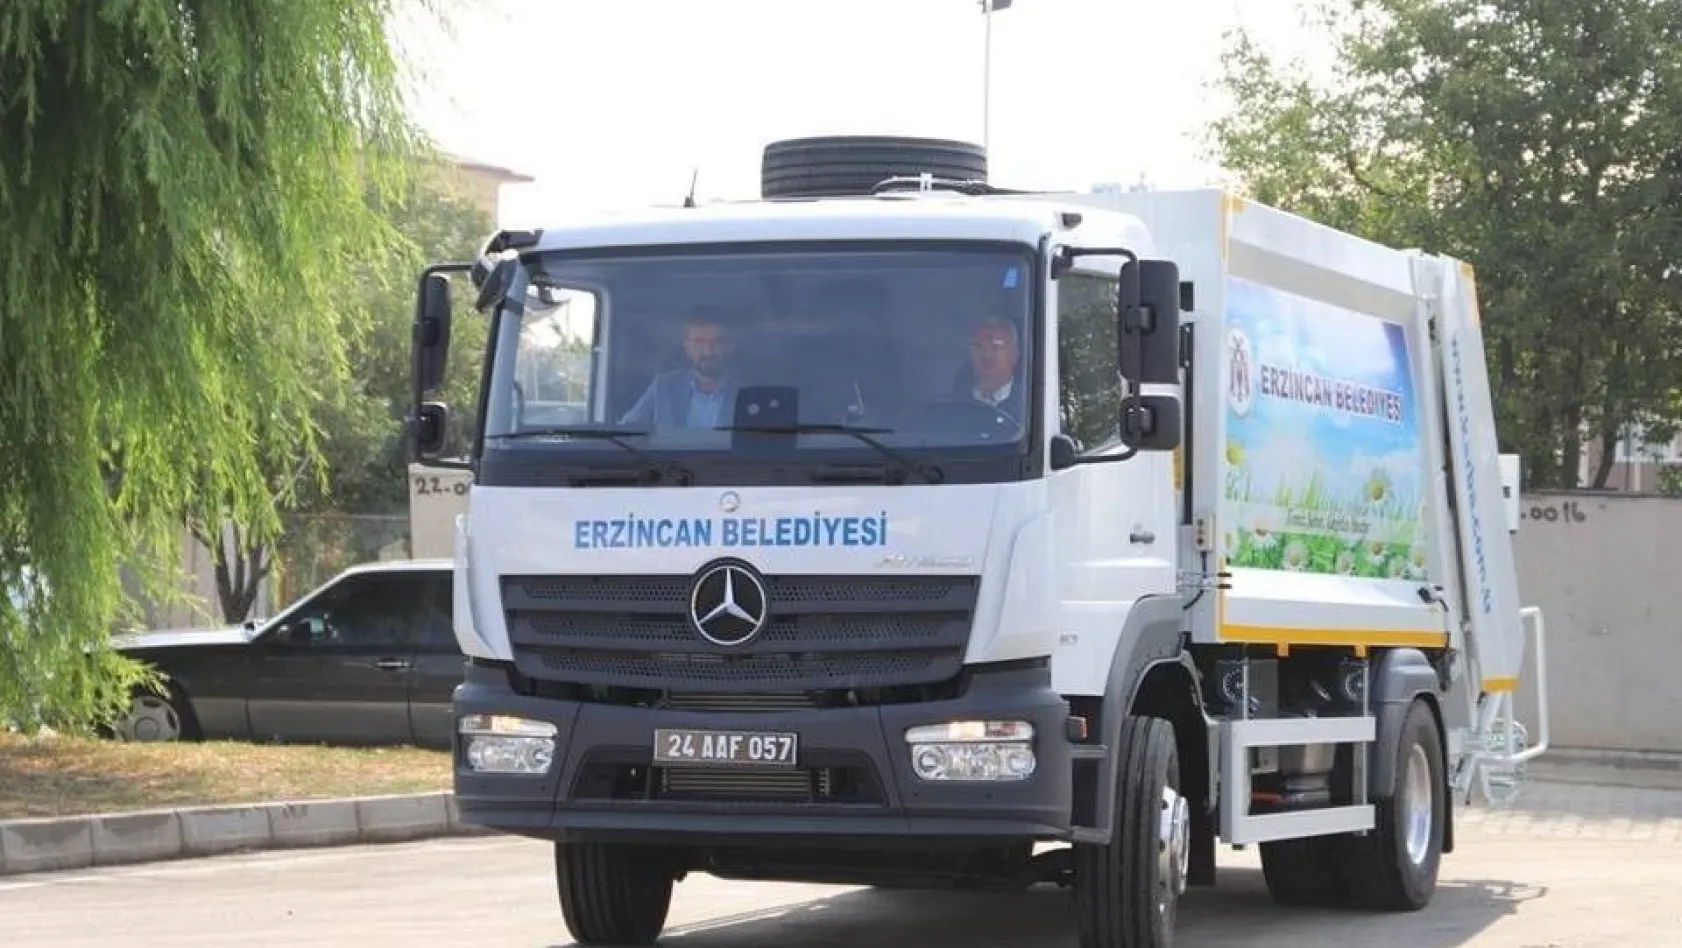 Erzincan Belediyesi araç filosunu genişletiyor
